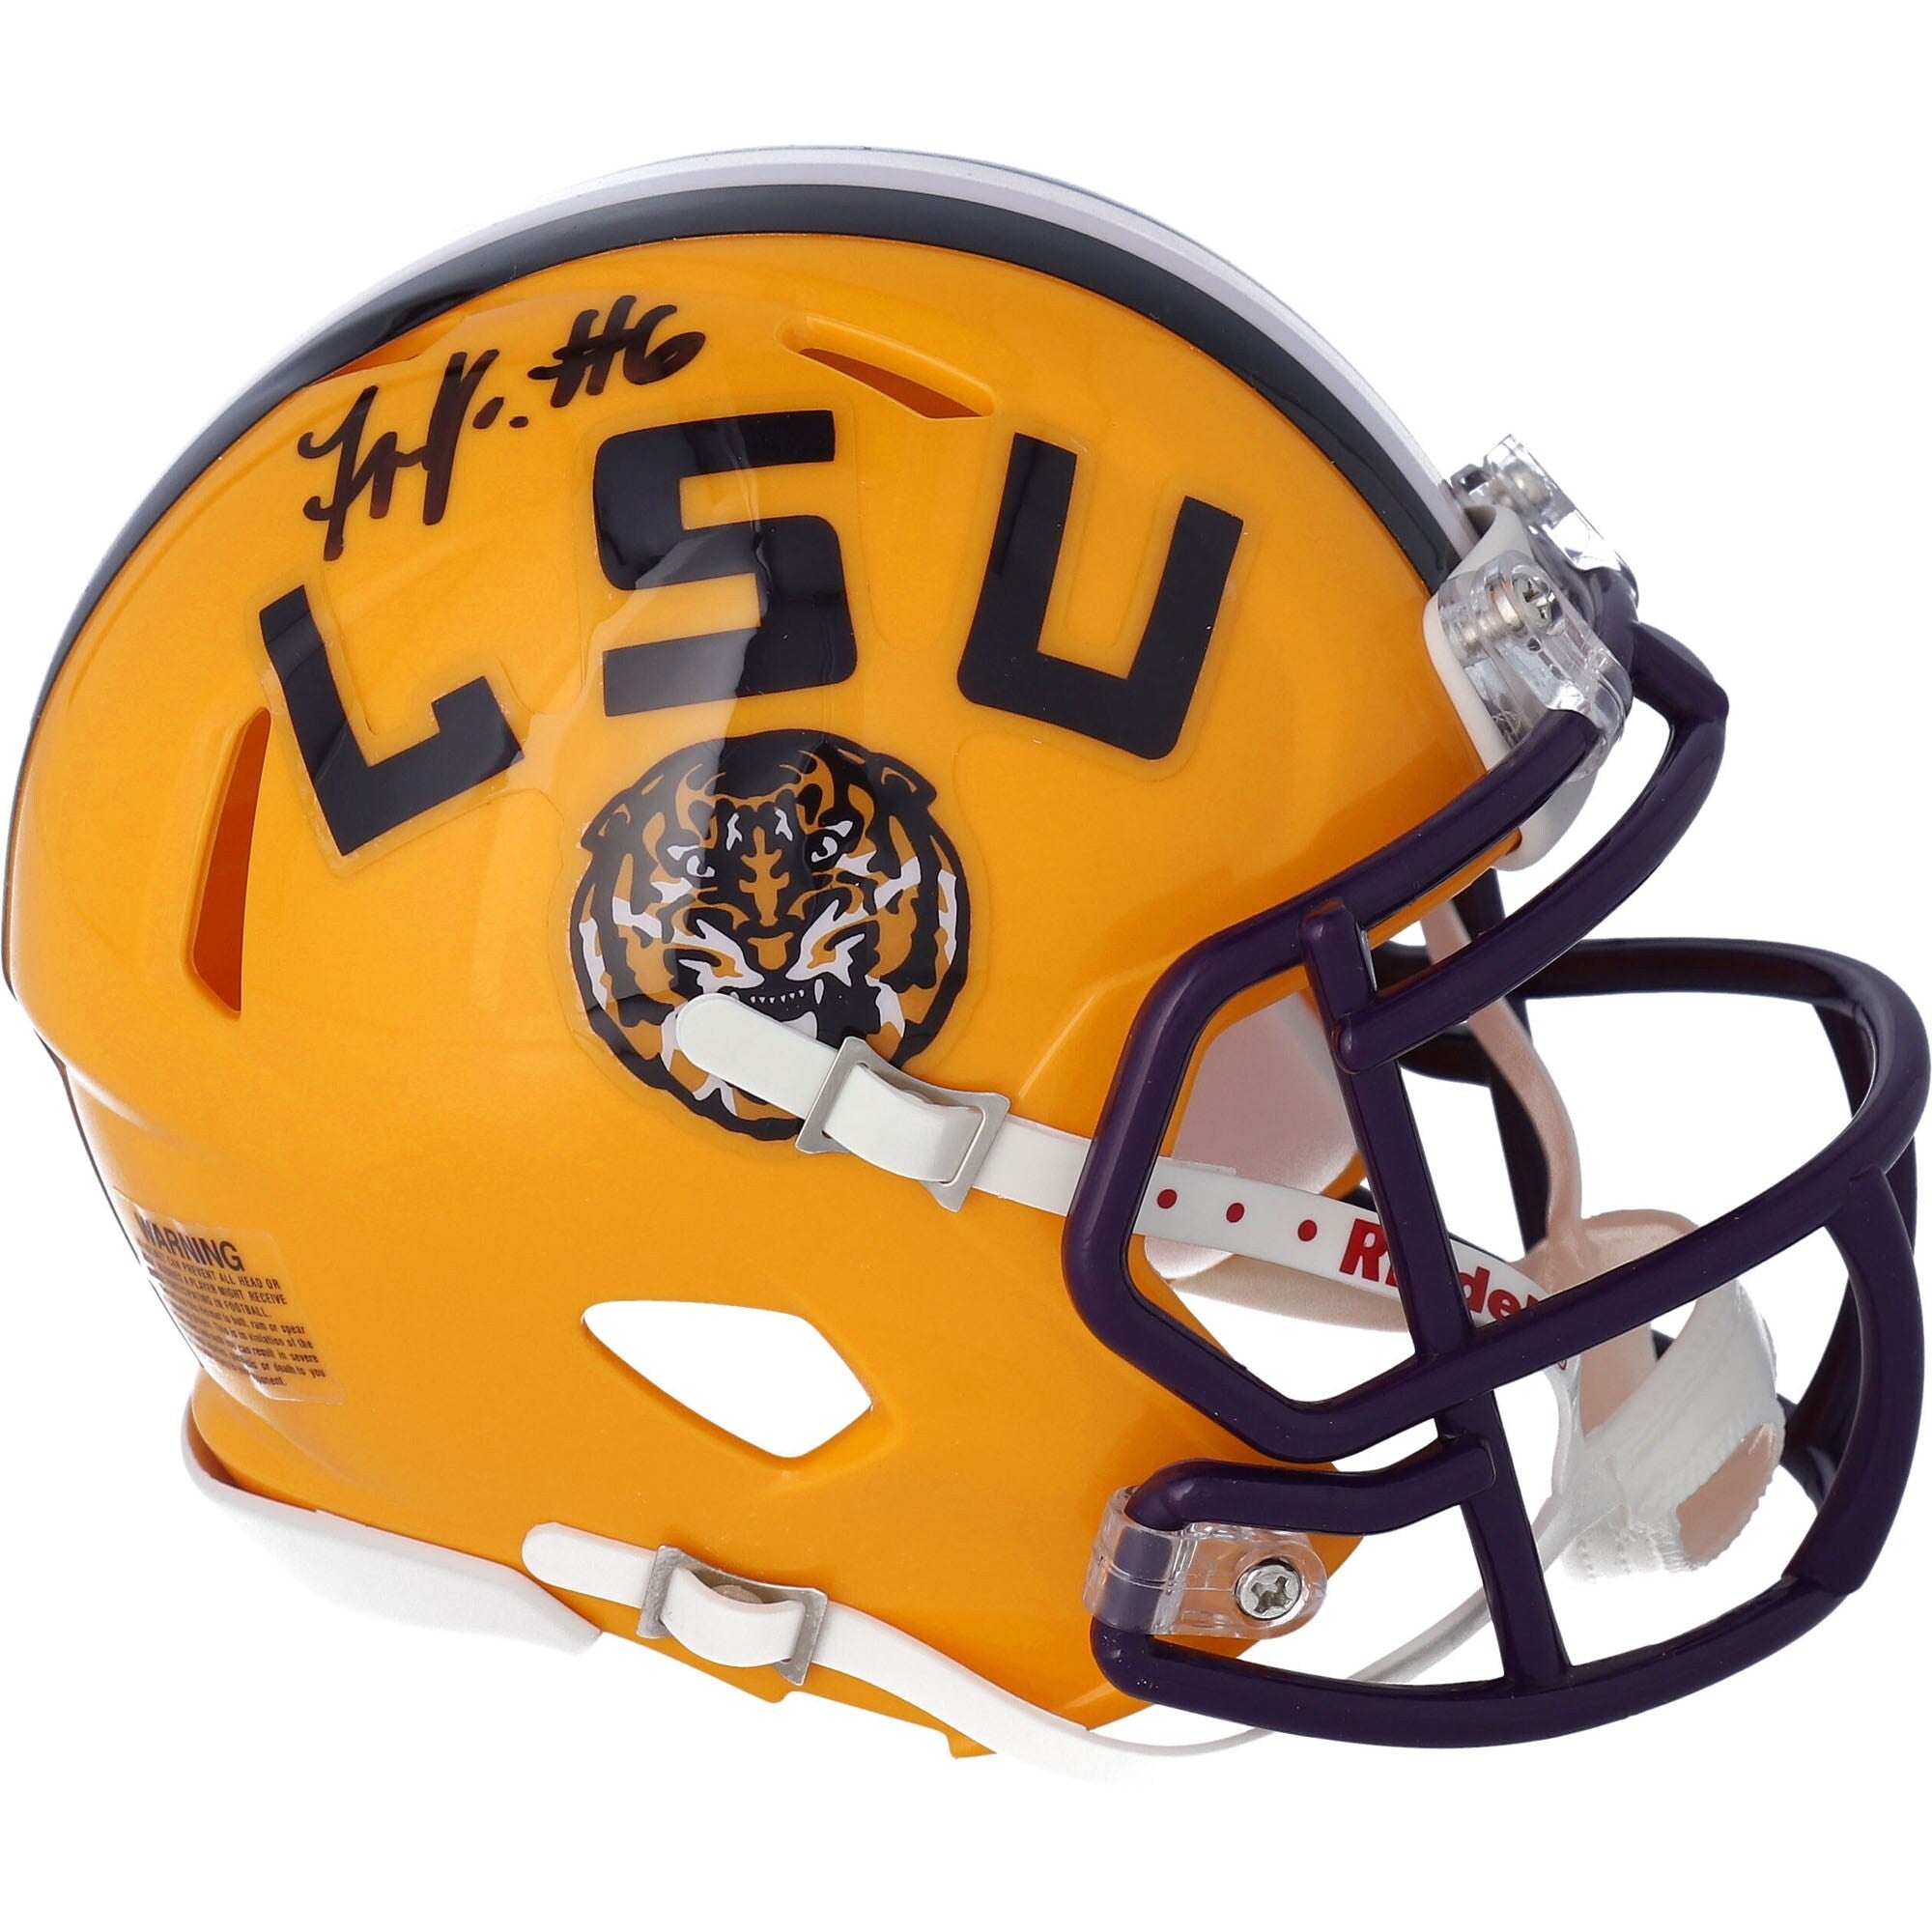 Terrace Marshall Jr. Autographed LSU Mini Football Helmet